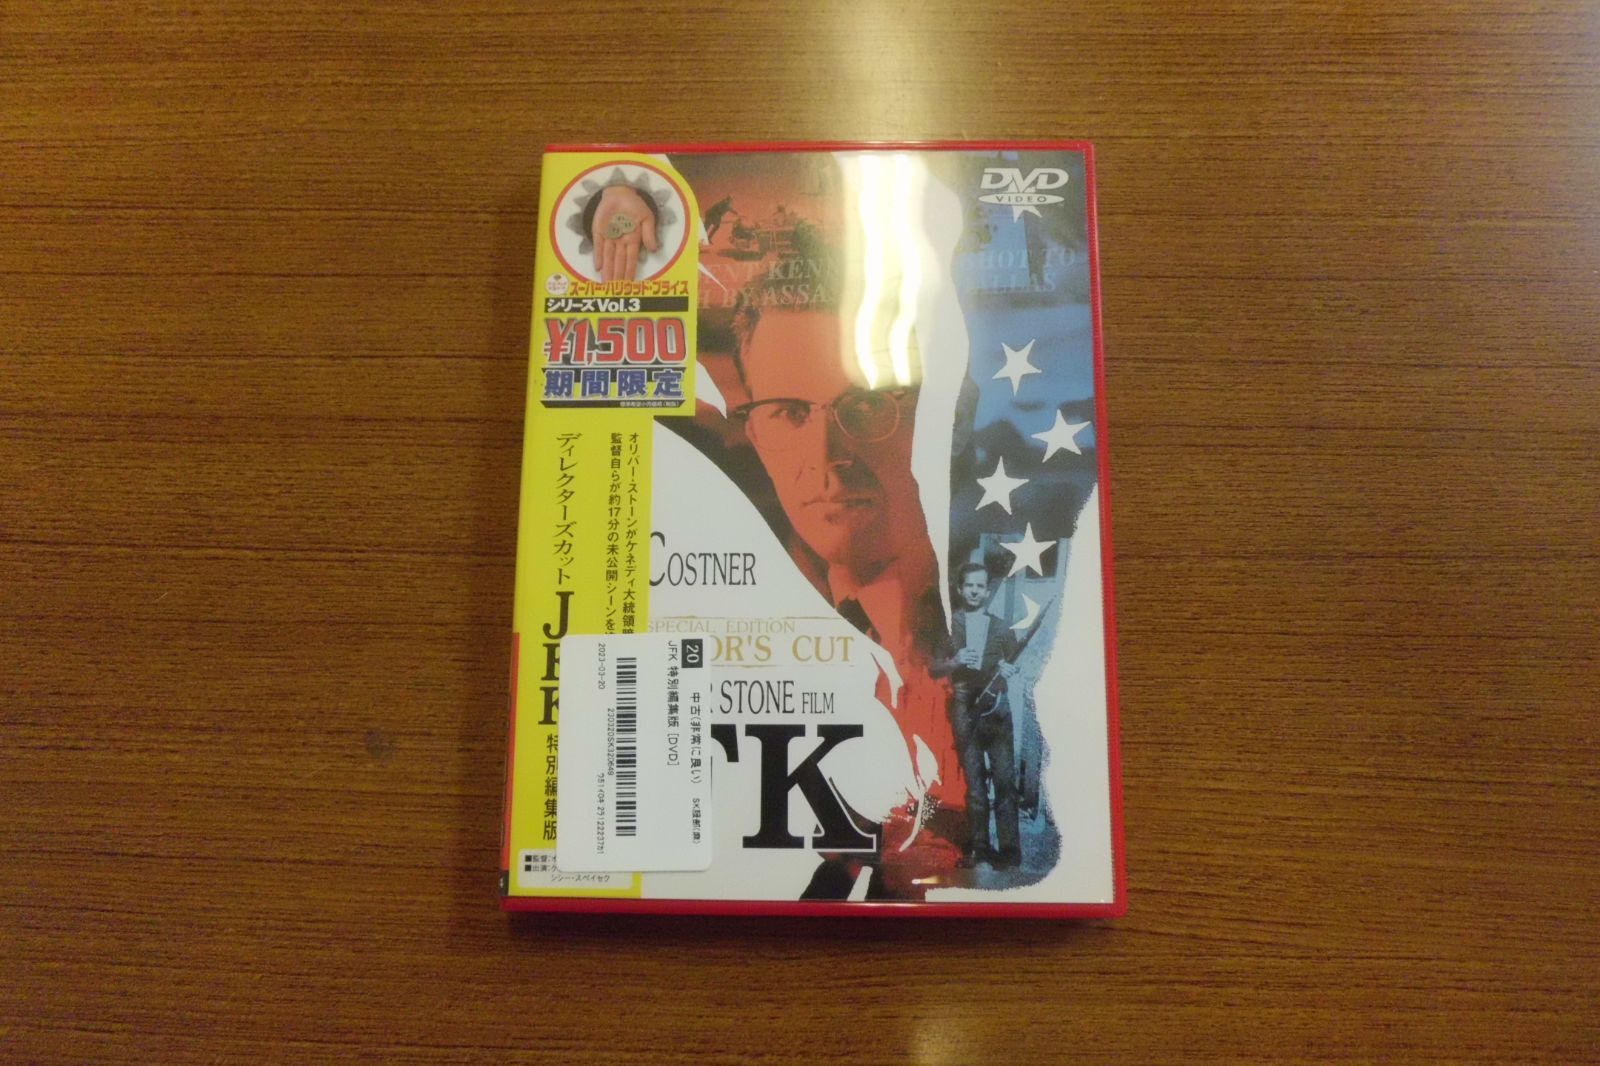 JFK 特別編集版 [DVD]／ケビン・コスナー、シシー・スペイセク、ジョー